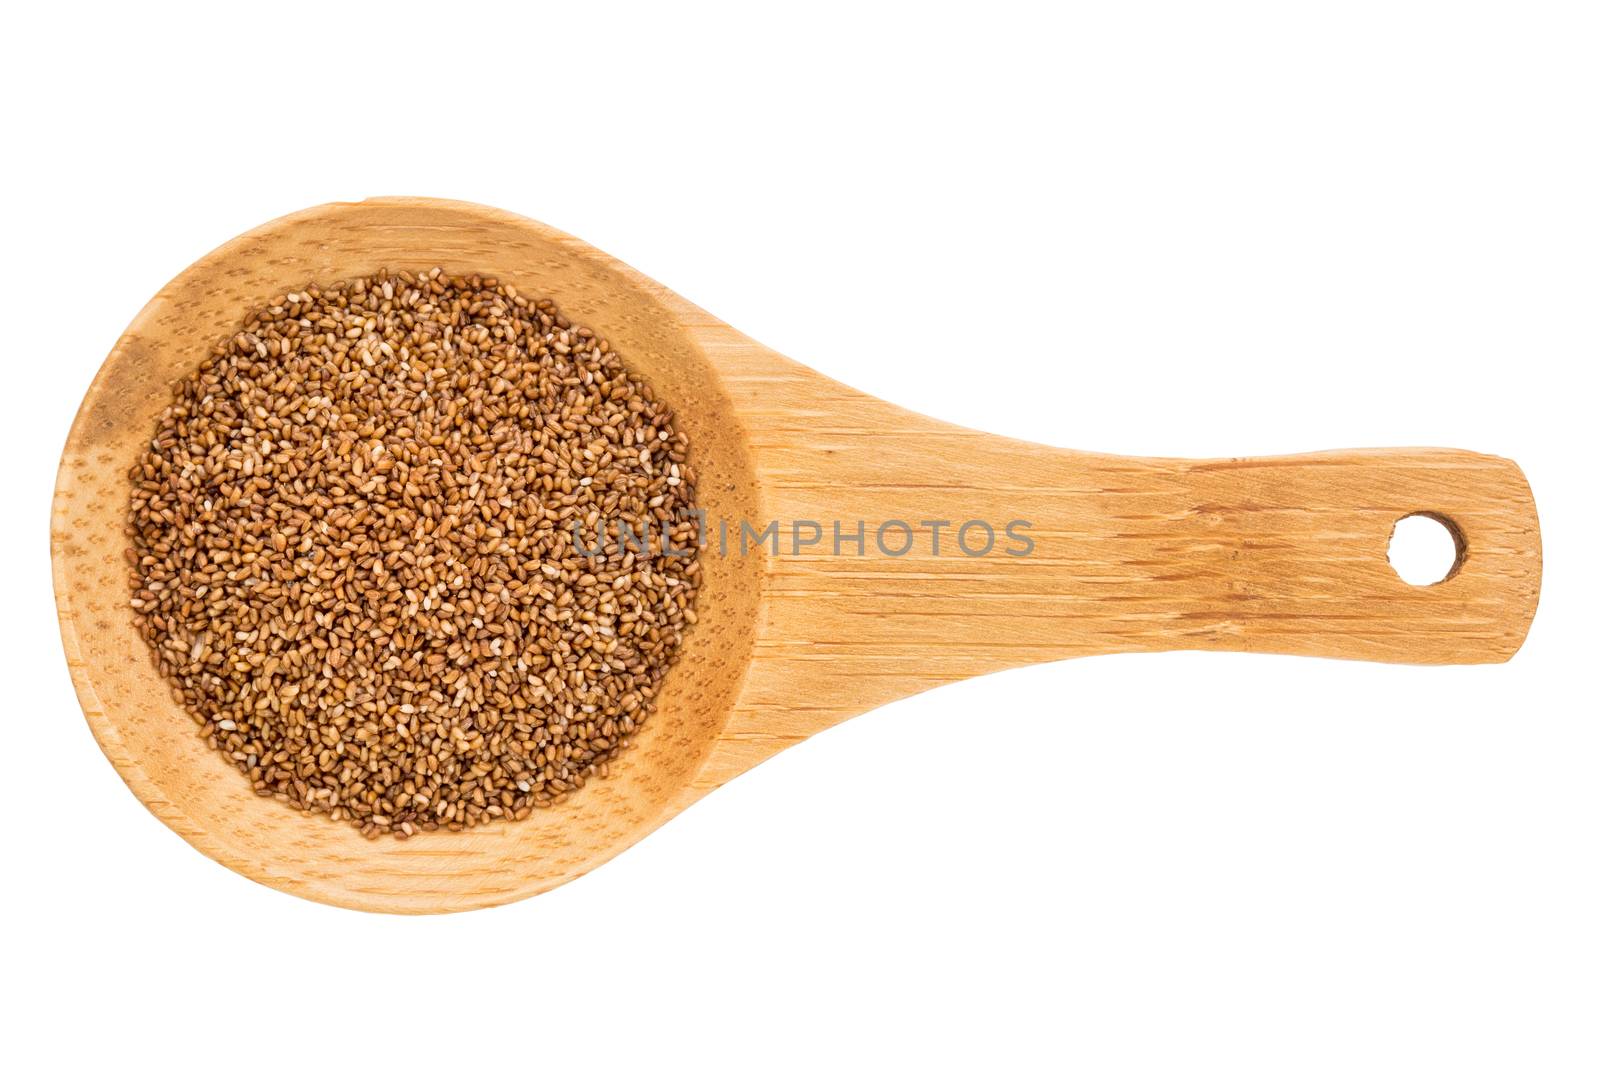 teff grain on wooden spoon by PixelsAway